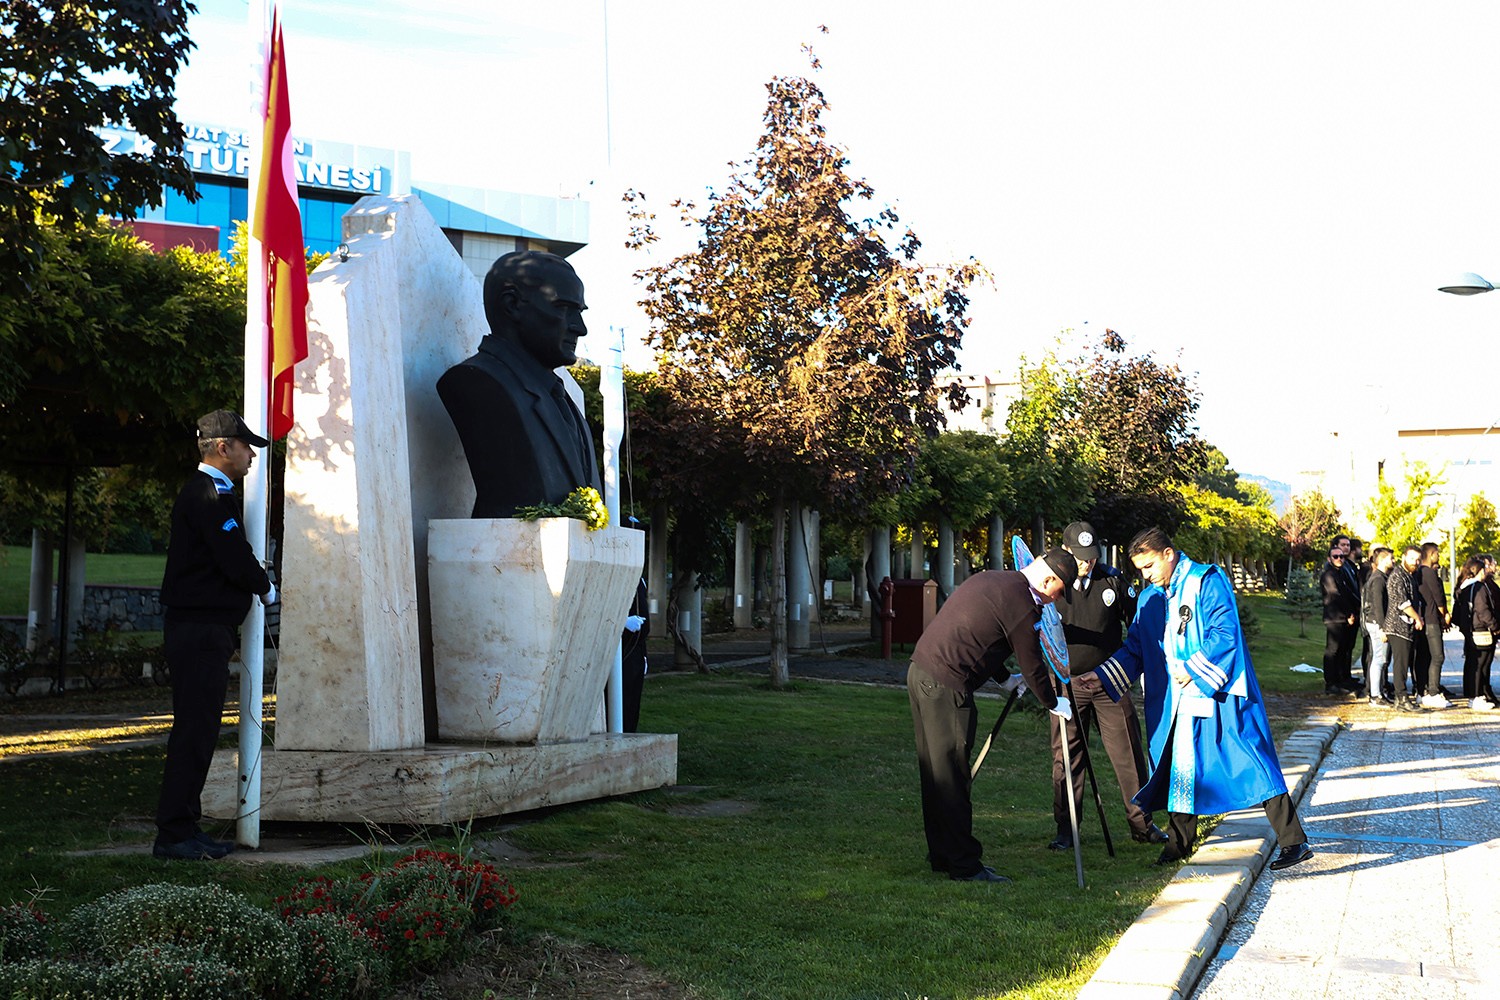 PAÜ’de 10 Kasım Atatürk’ü Anma Töreni Düzenlendi